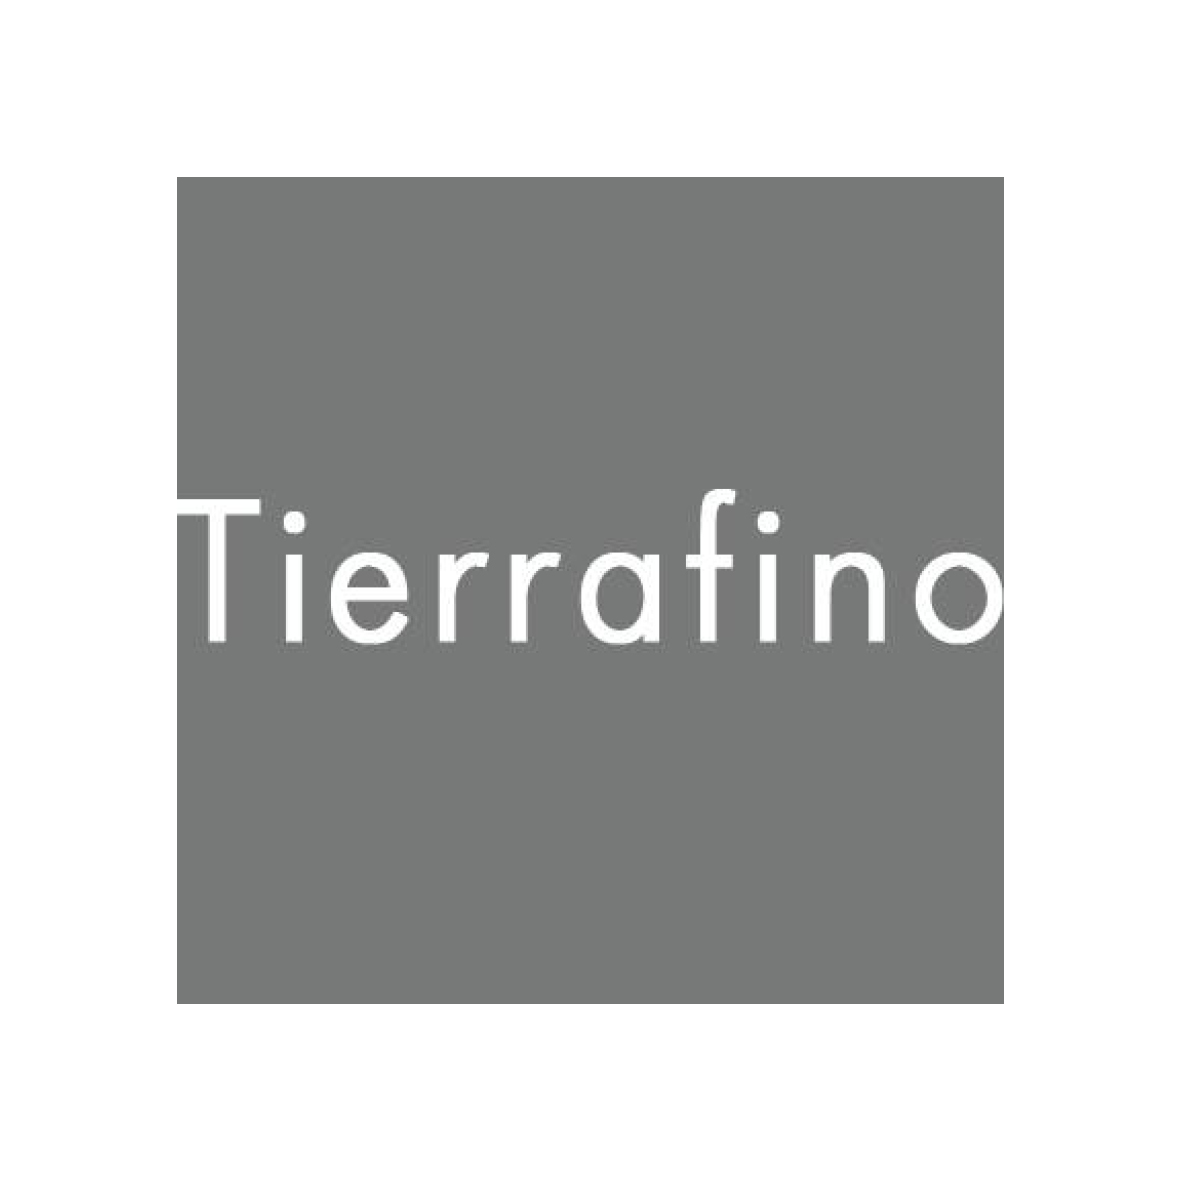 Tierrafino